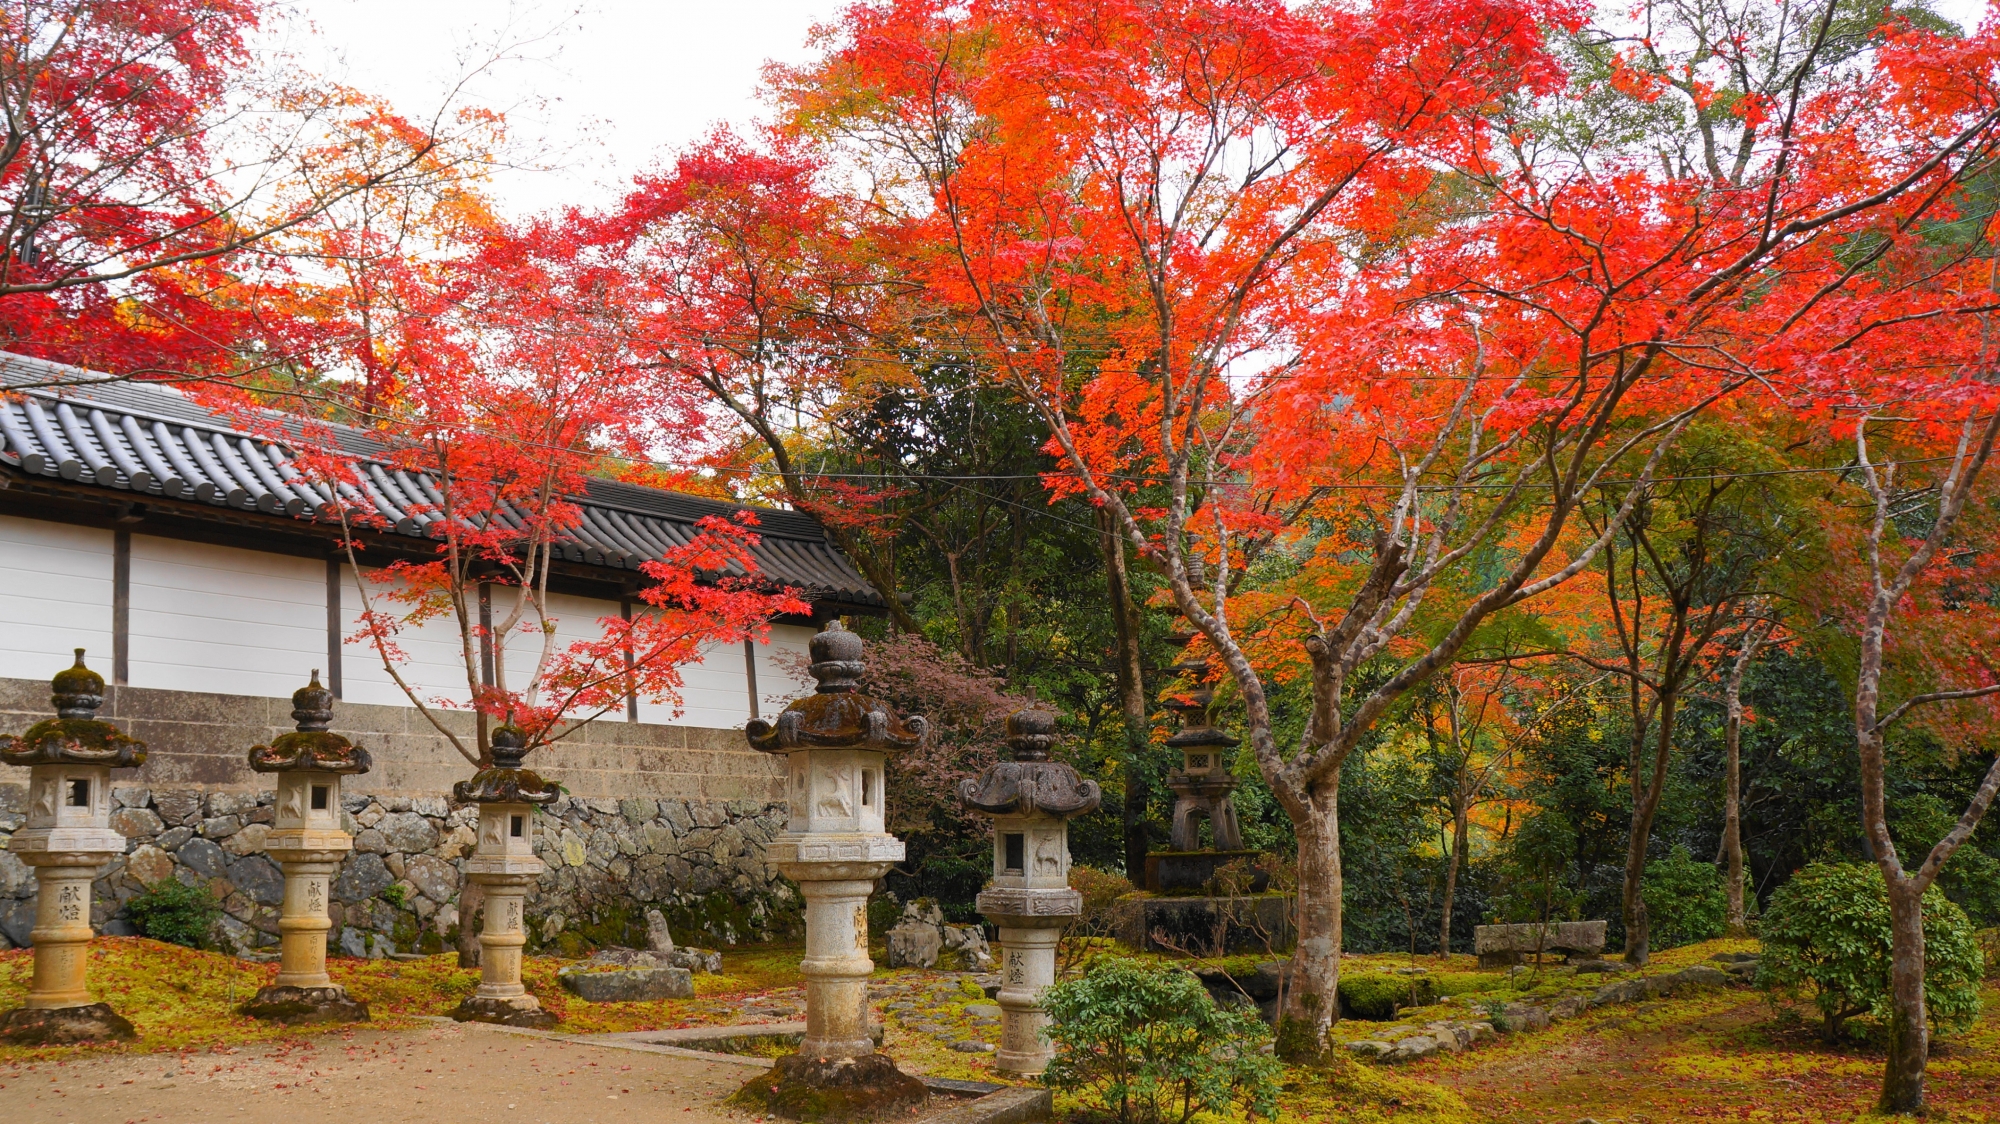 灯籠や表門を秋色に染める鮮やかな紅葉